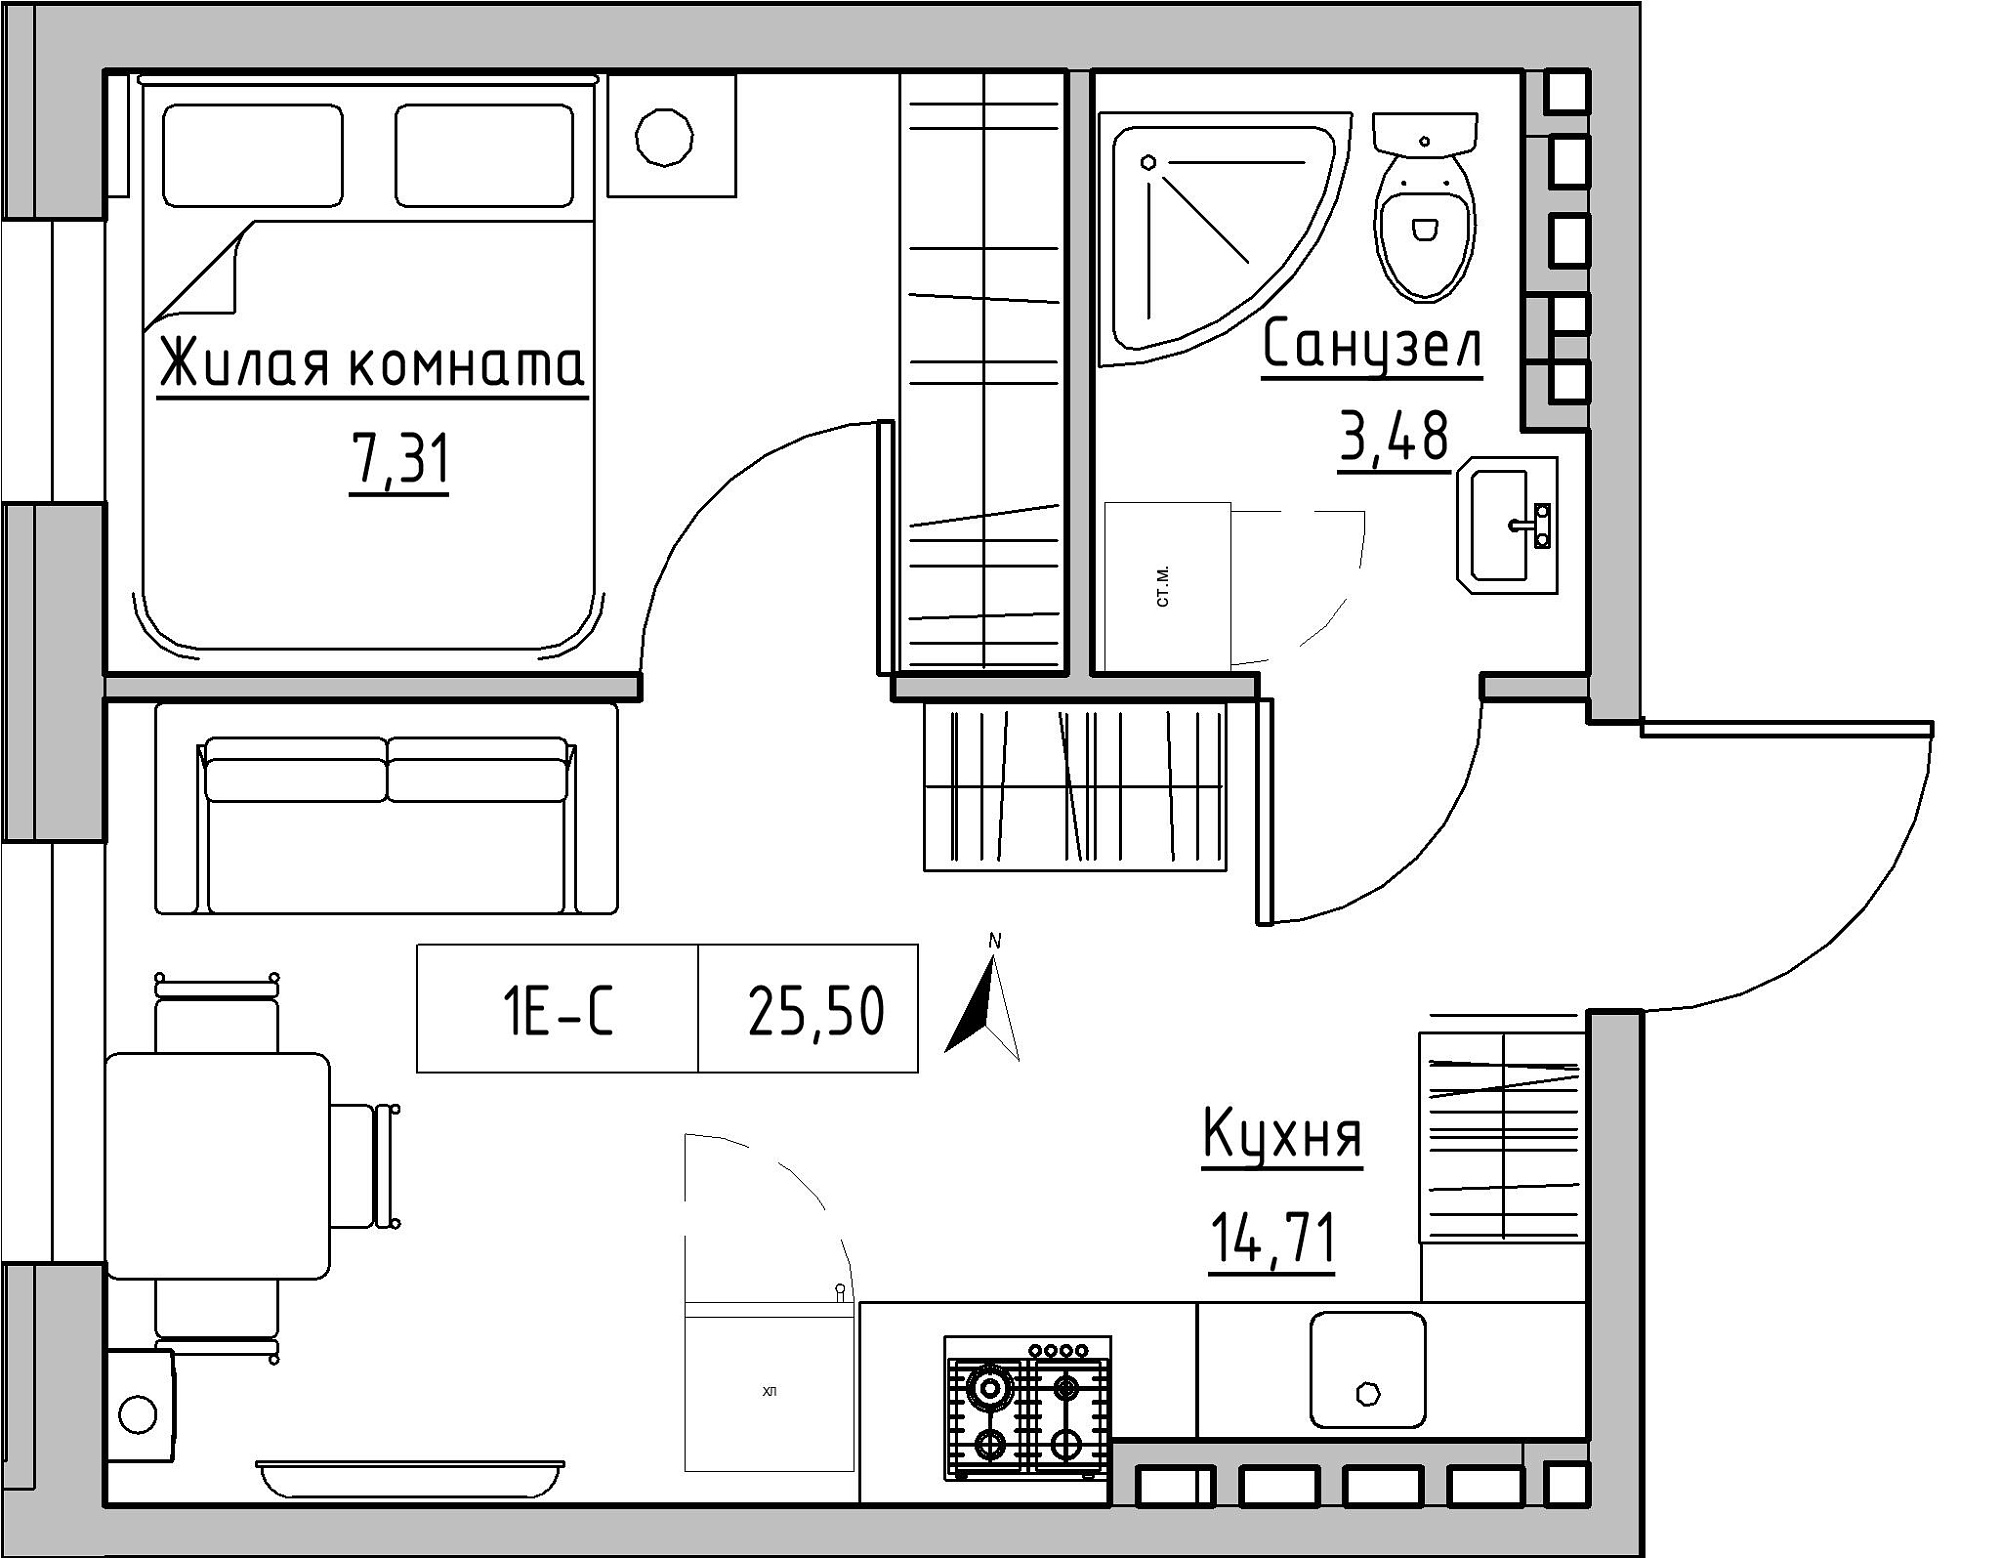 Планировка 1-к квартира площей 25.5м2, KS-024-04/0014.